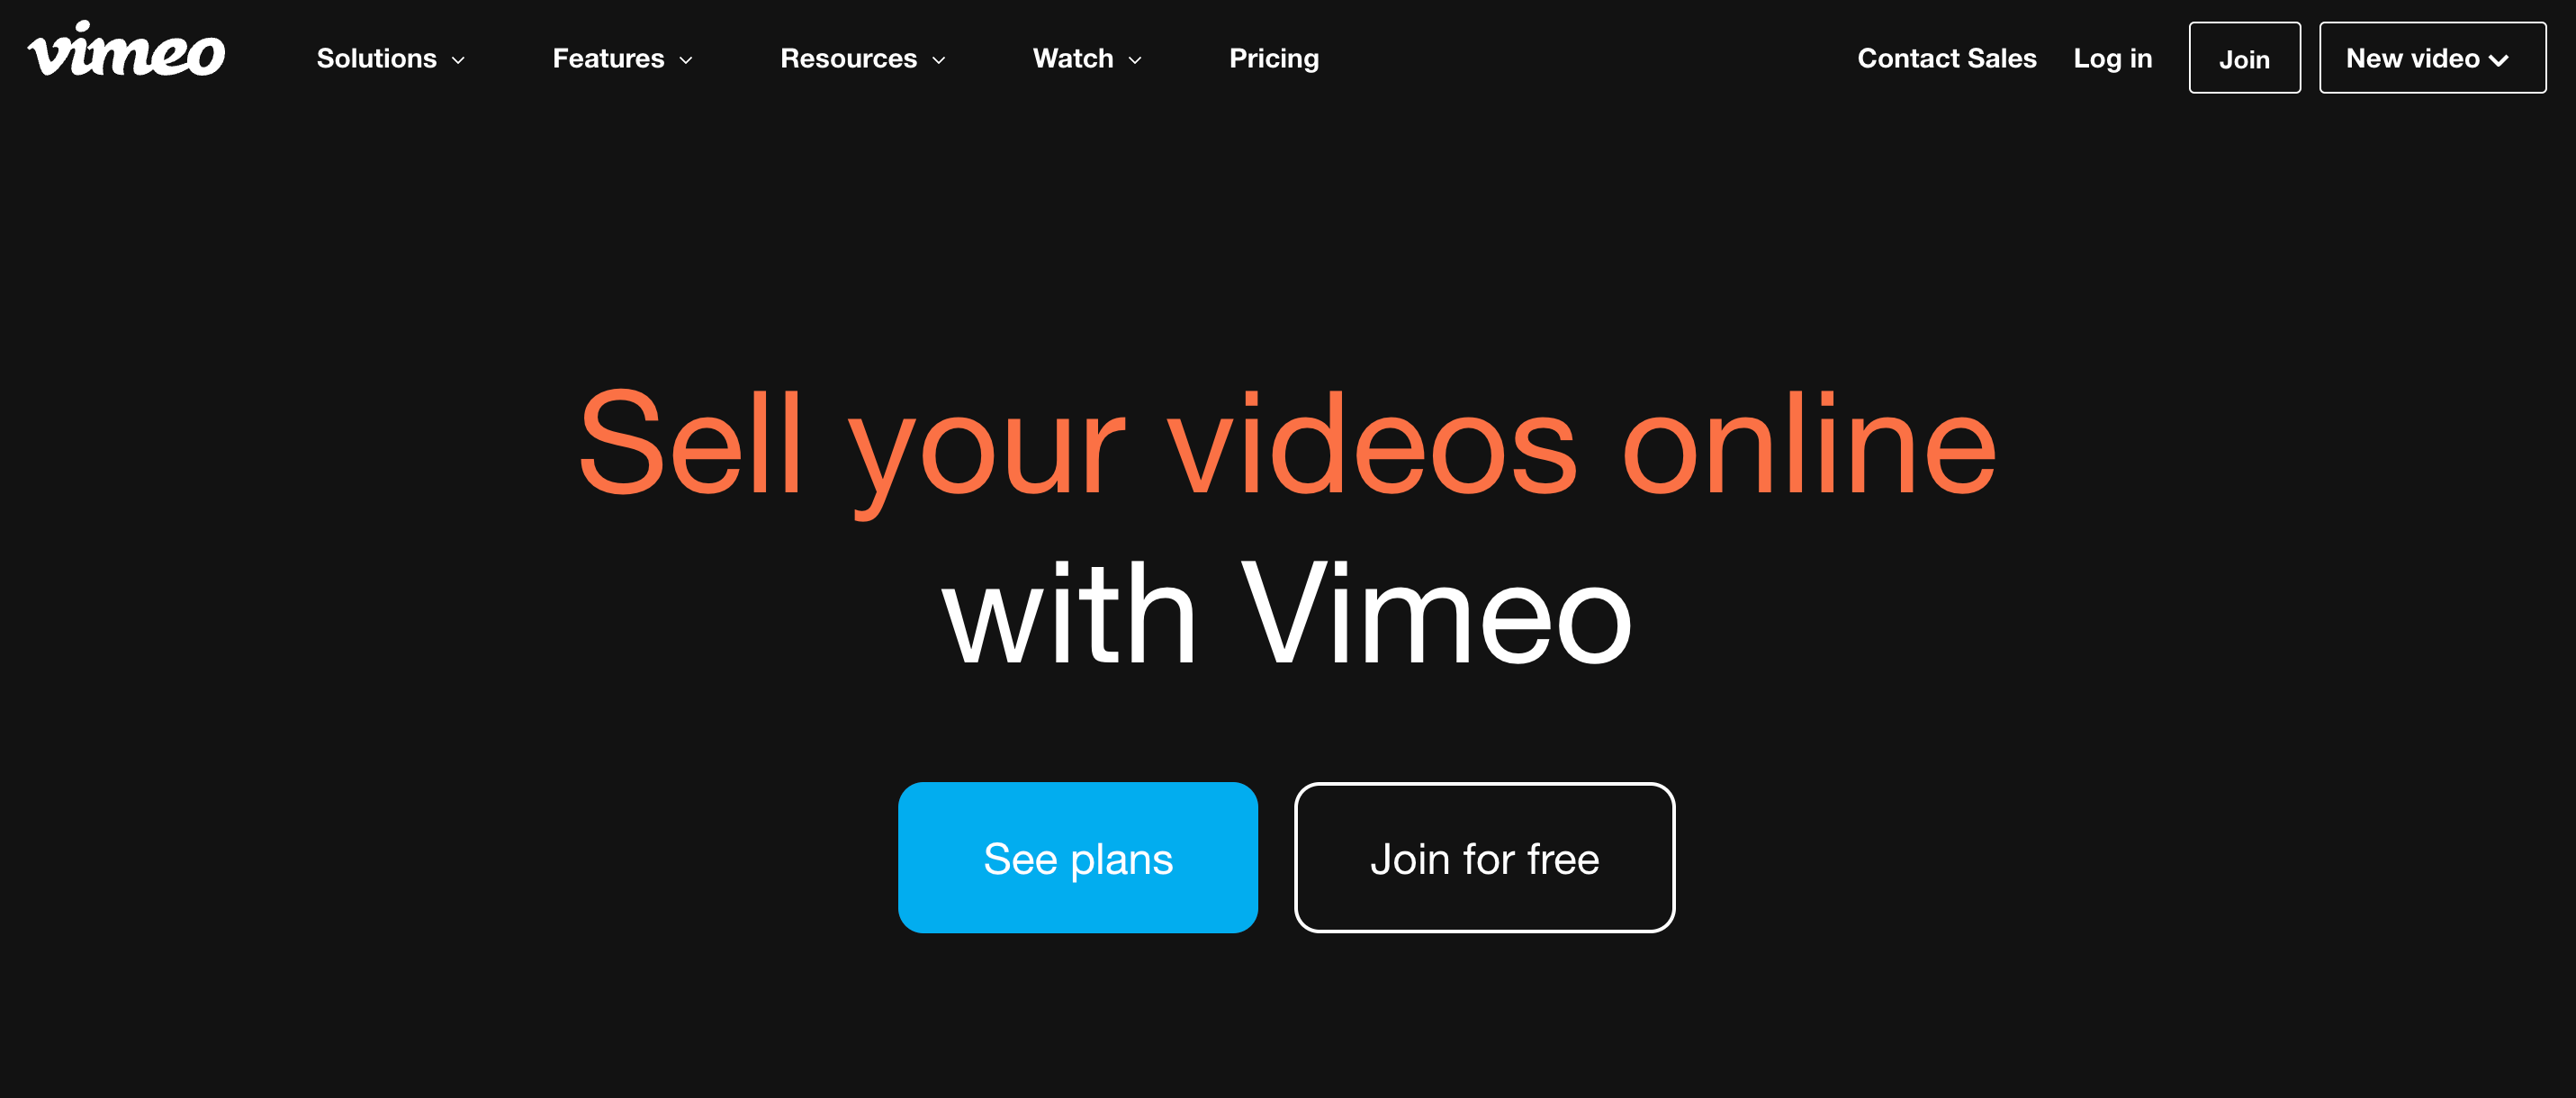 The Vimeo website